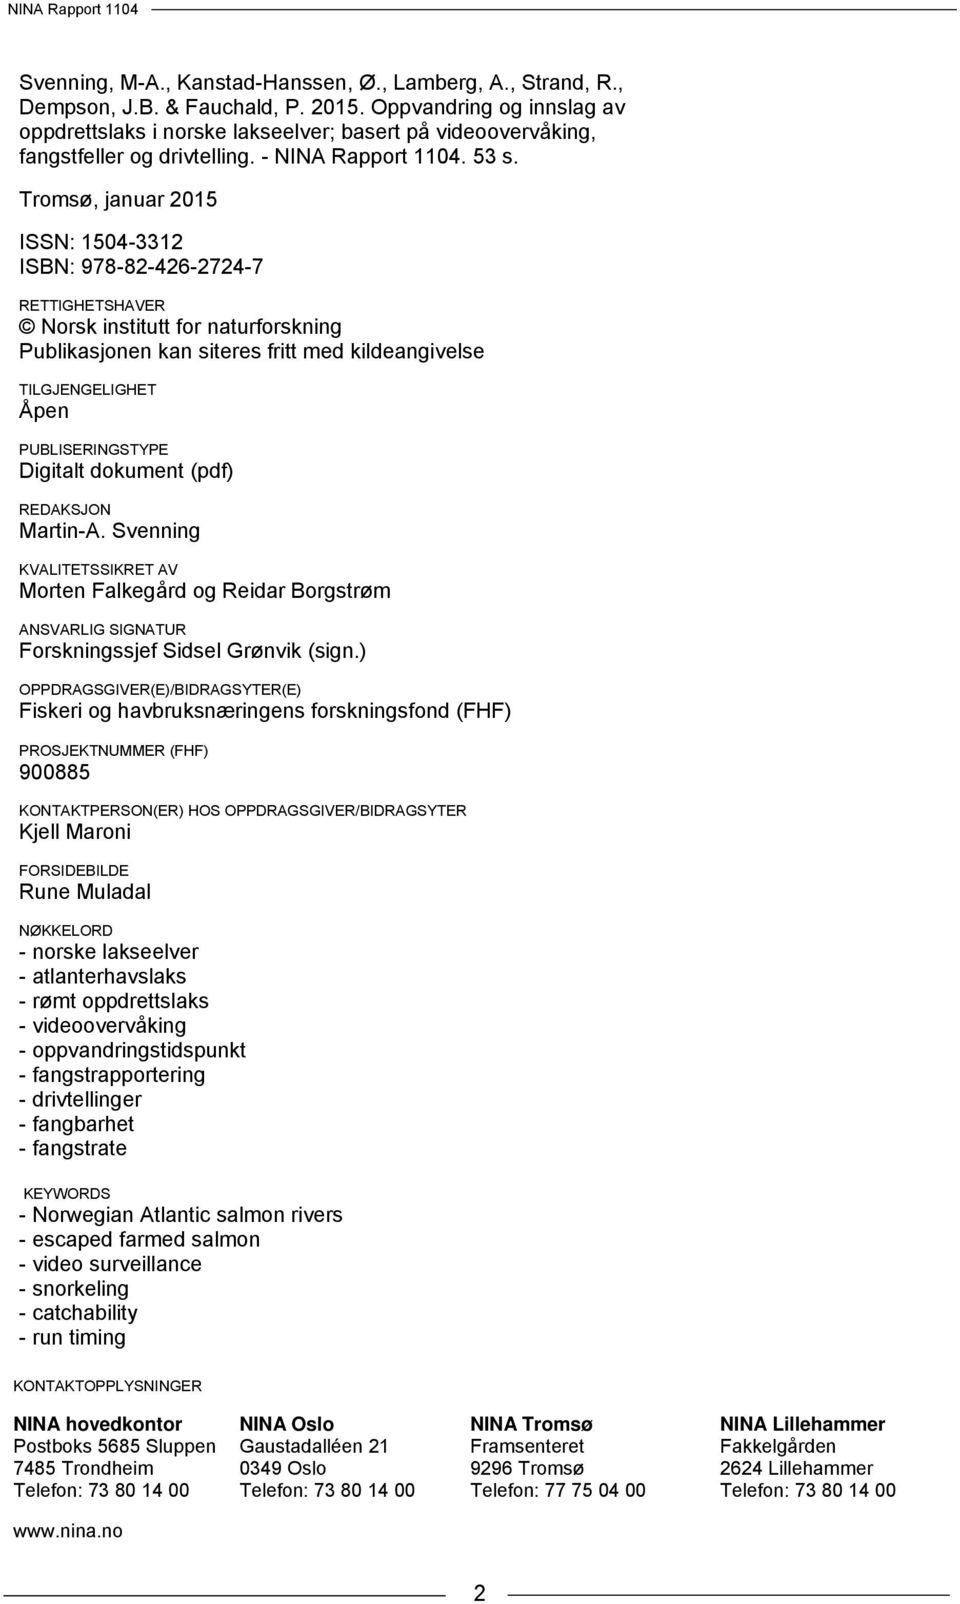 Tromsø, januar 2015 ISSN: 1504-3312 ISBN: 978-82-426-2724-7 RETTIGHETSHAVER Norsk institutt for naturforskning Publikasjonen kan siteres fritt med kildeangivelse TILGJENGELIGHET Åpen PUBLISERINGSTYPE